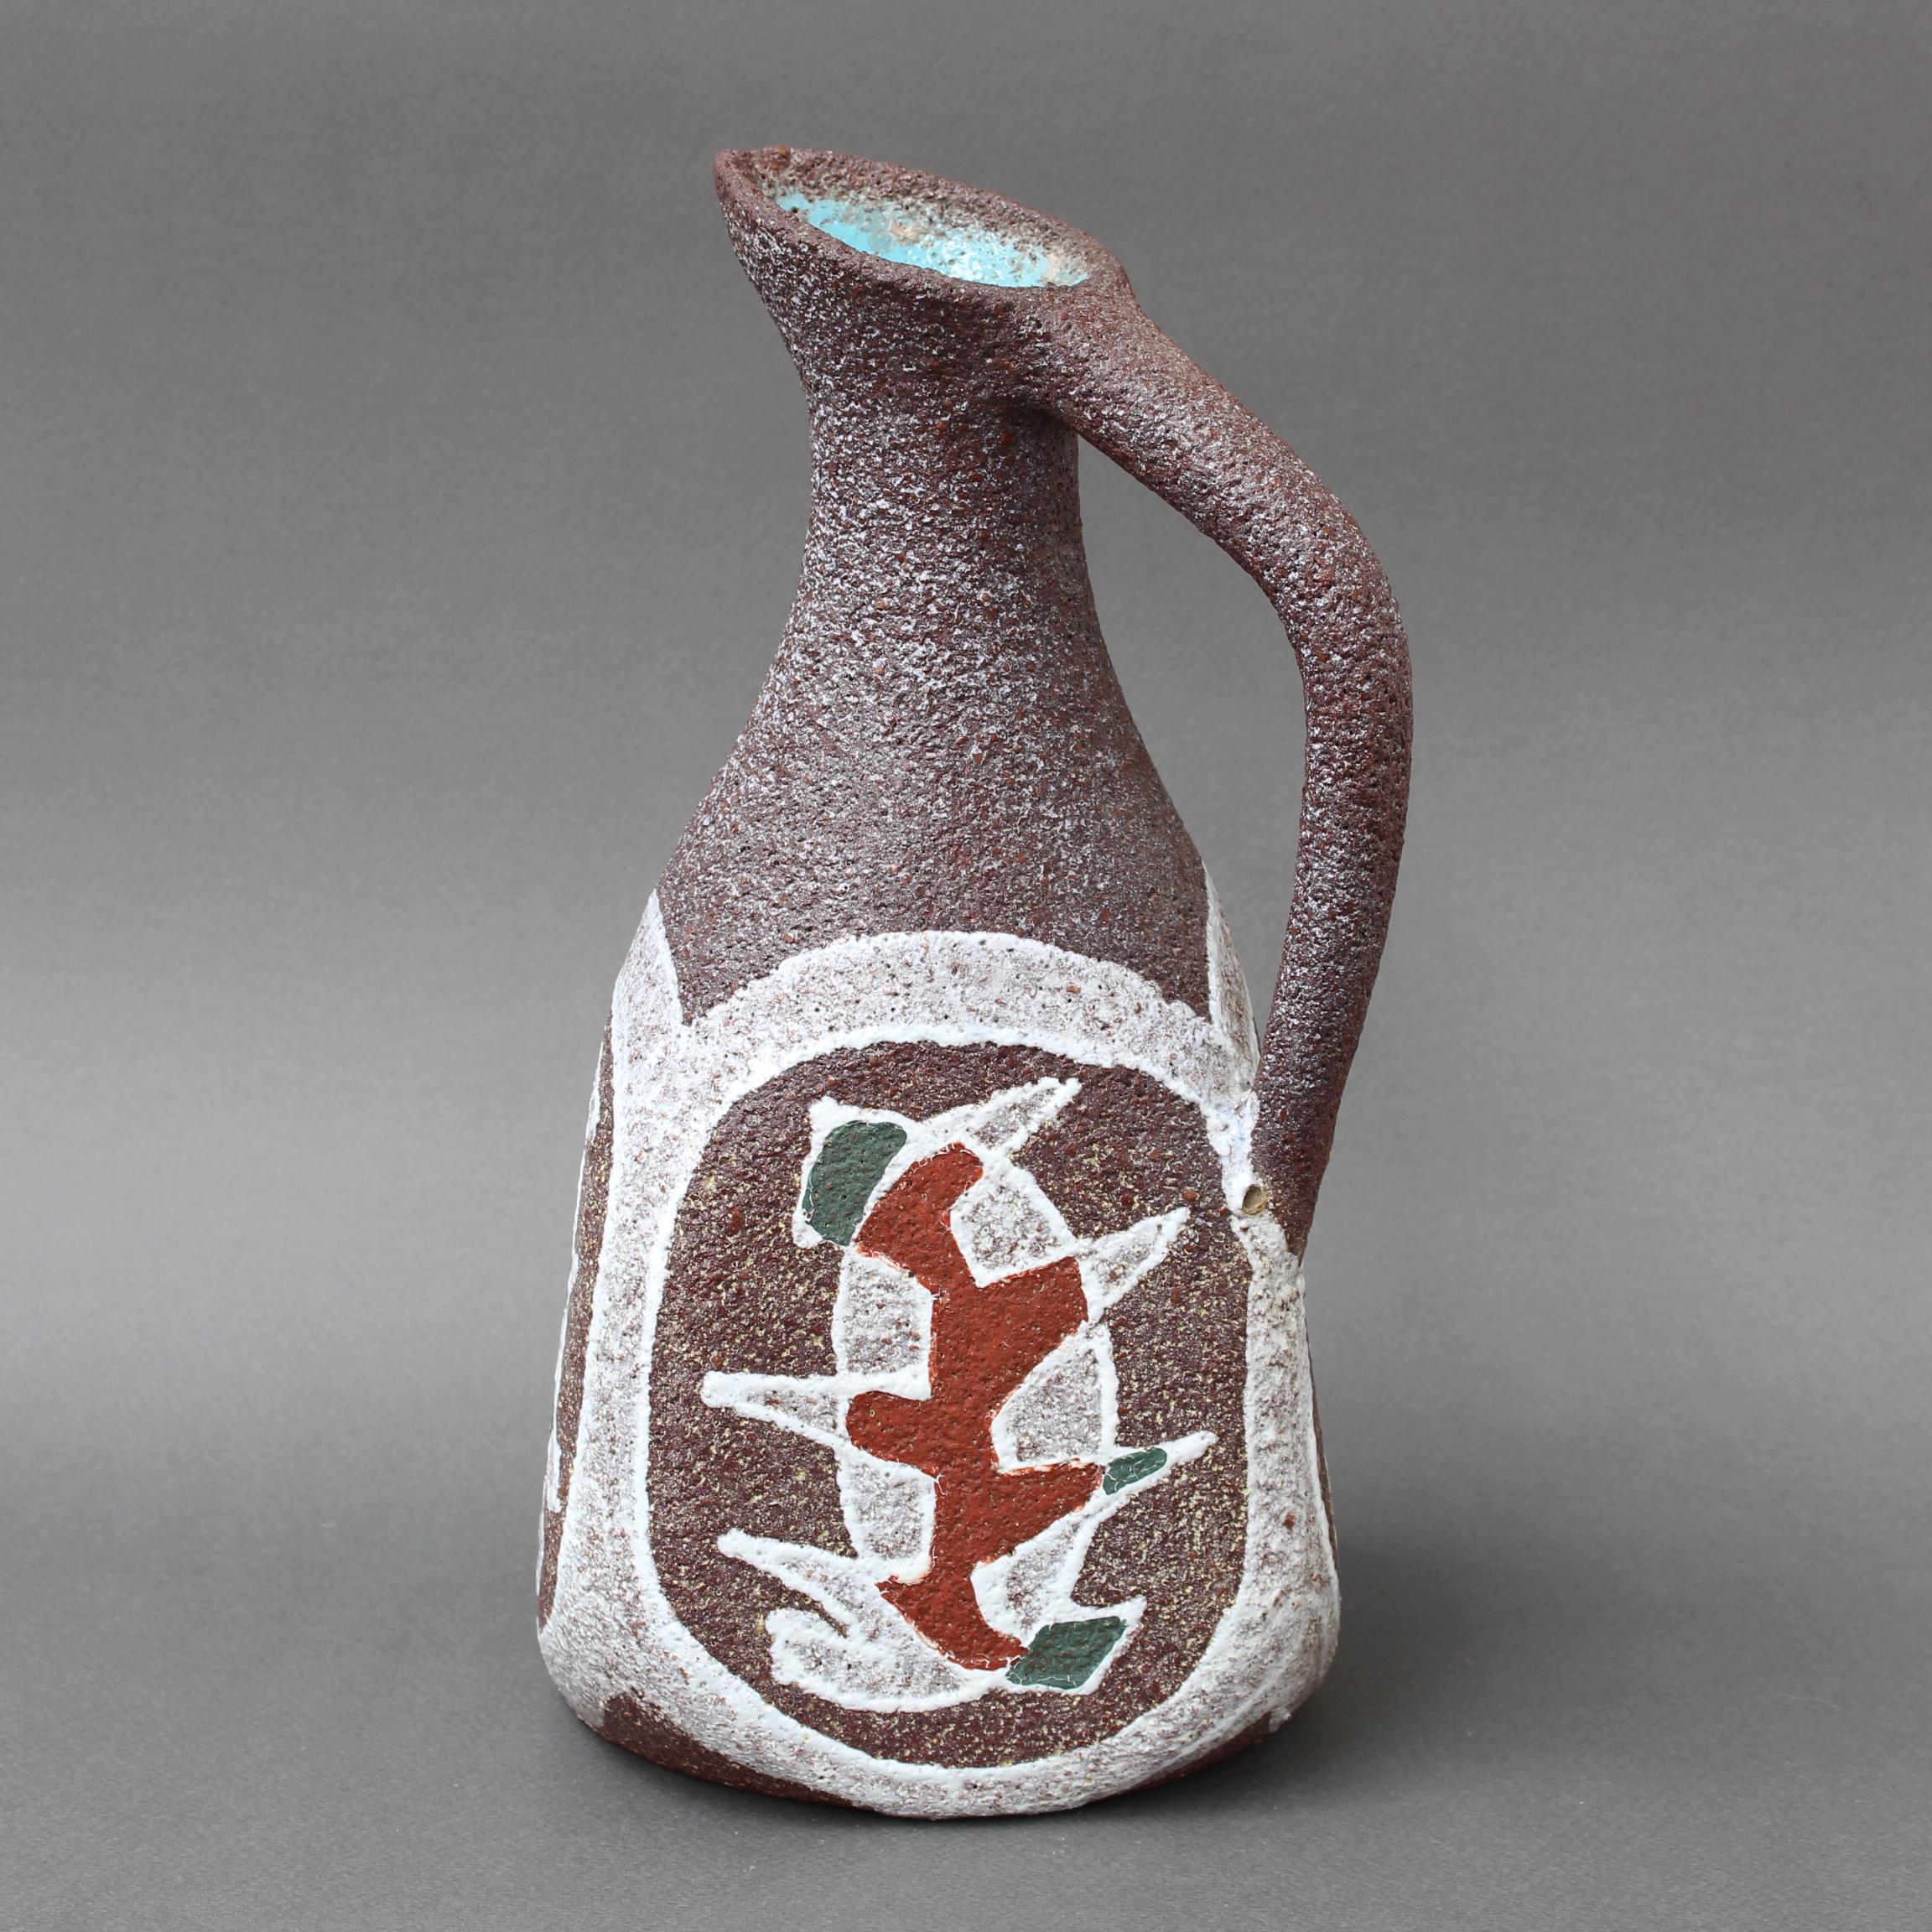 Dekorative Keramikvase / Krug von Accolay aus der Mitte des Jahrhunderts (ca. 1960er Jahre). Ein klassisch geformtes Stück aus der Antike wird im unverwechselbaren Stil von Accolay neu interpretiert. Der Krug hat weiche, sinnliche Kurven und einen